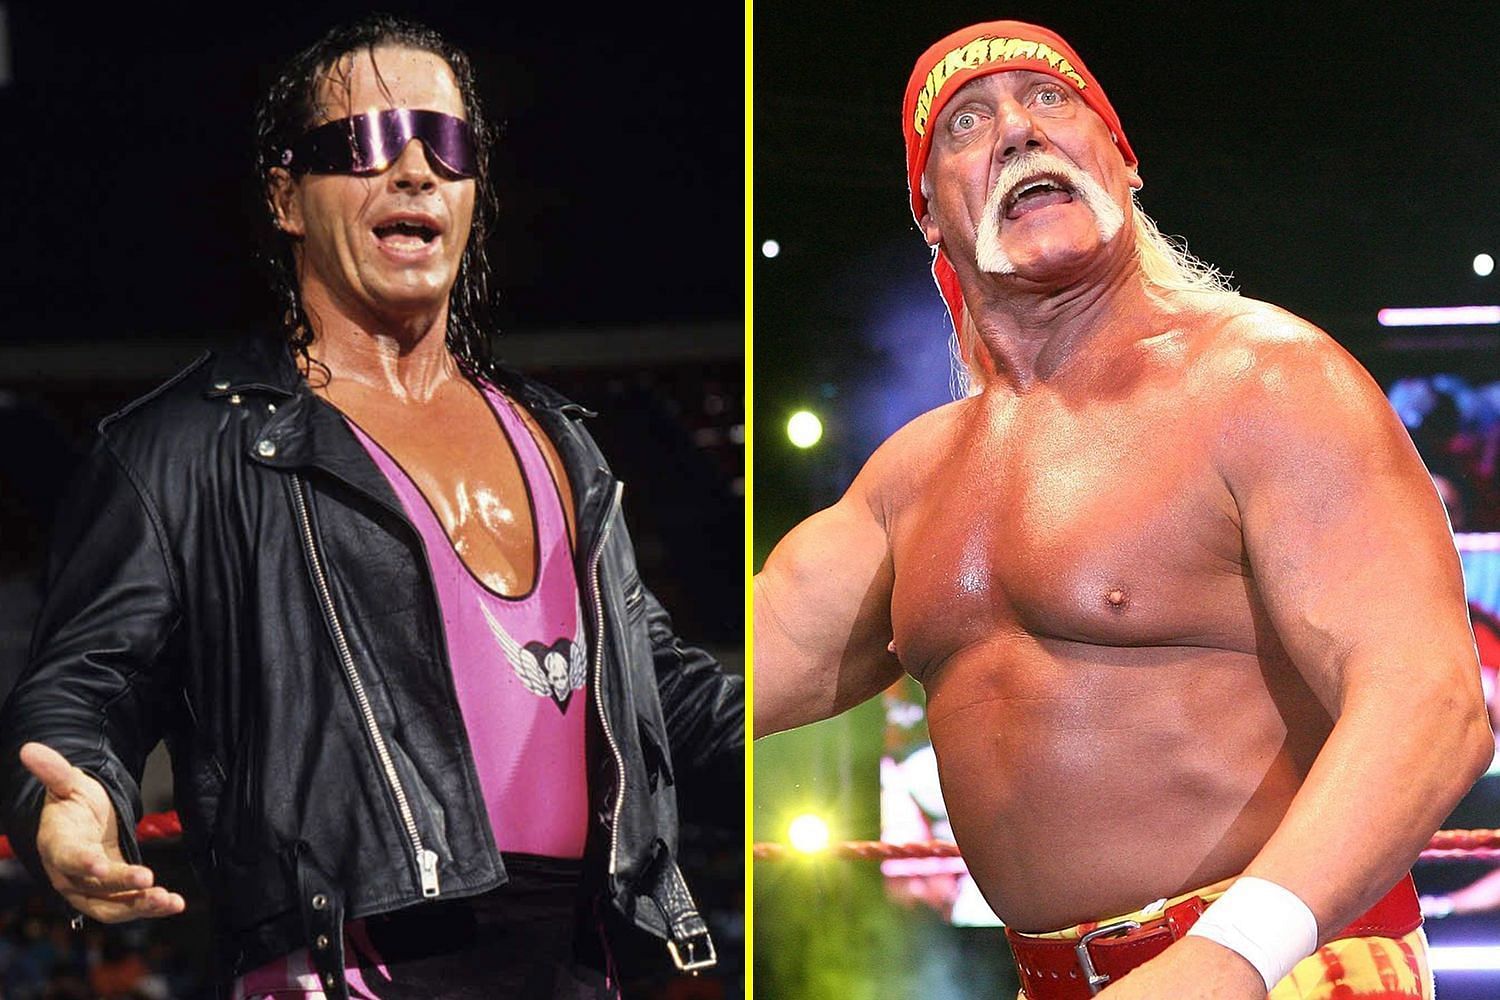 Bret Hart &amp; Hulk Hogan